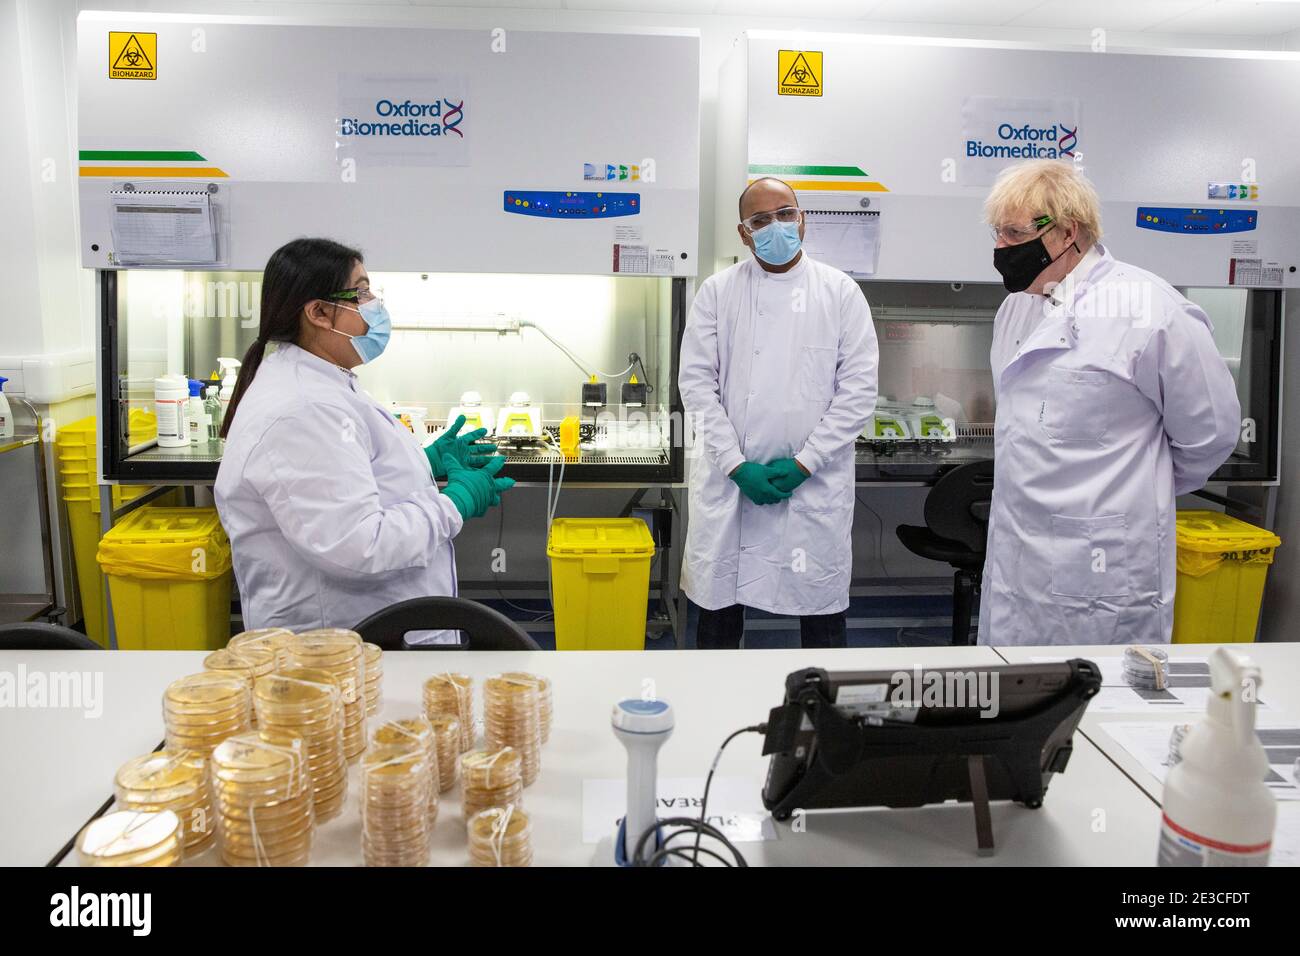 Le Premier ministre Boris Johnson s'entretient avec Dipesh Sonar (au centre) et Nisha Gill dans le laboratoire de contrôle de la qualité, où des lots de vaccins sont testés, lors d'une visite de l'usine de fabrication du vaccin Oxford/AstraZeneca à Oxford Biomedica dans l'Oxfordshire. Date de la photo: Lundi 18 janvier 2021. Banque D'Images